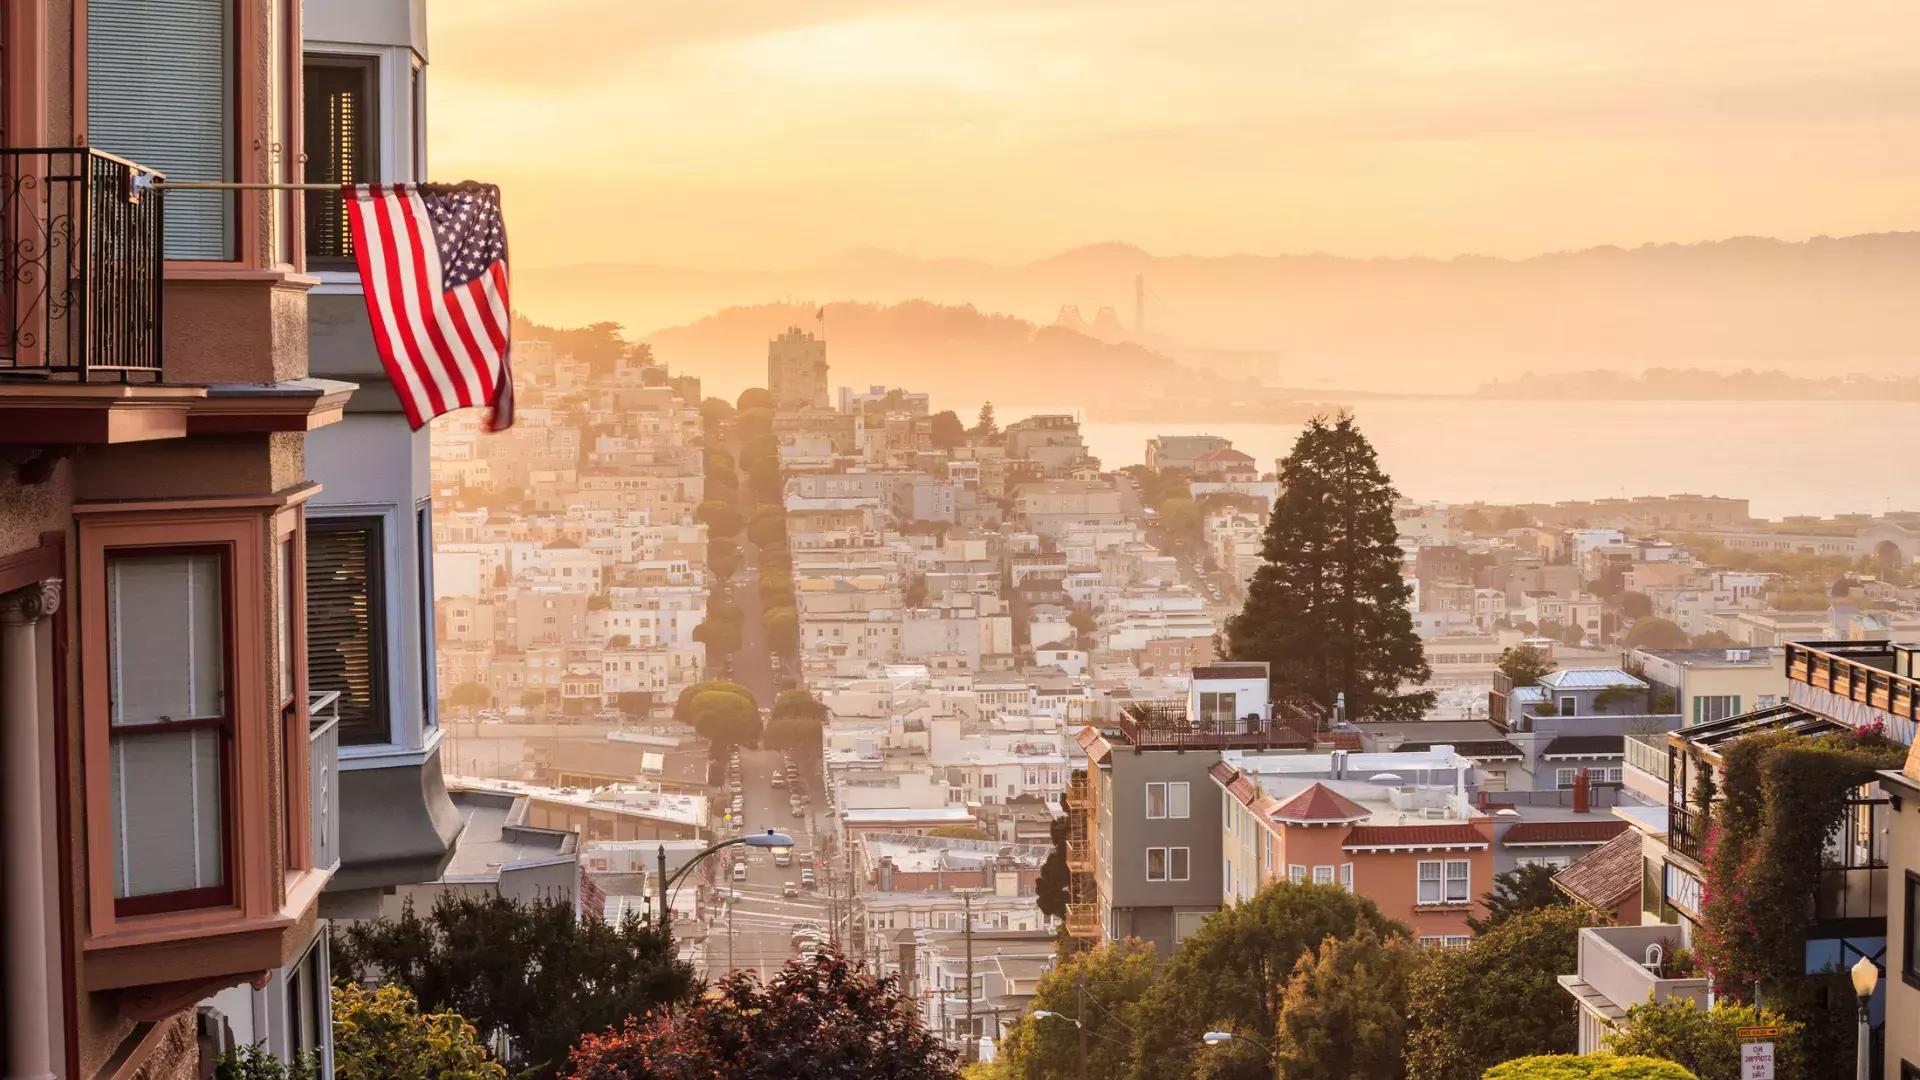 从山顶俯瞰贝博体彩app的景色, 前景中飘扬着一面美国国旗.